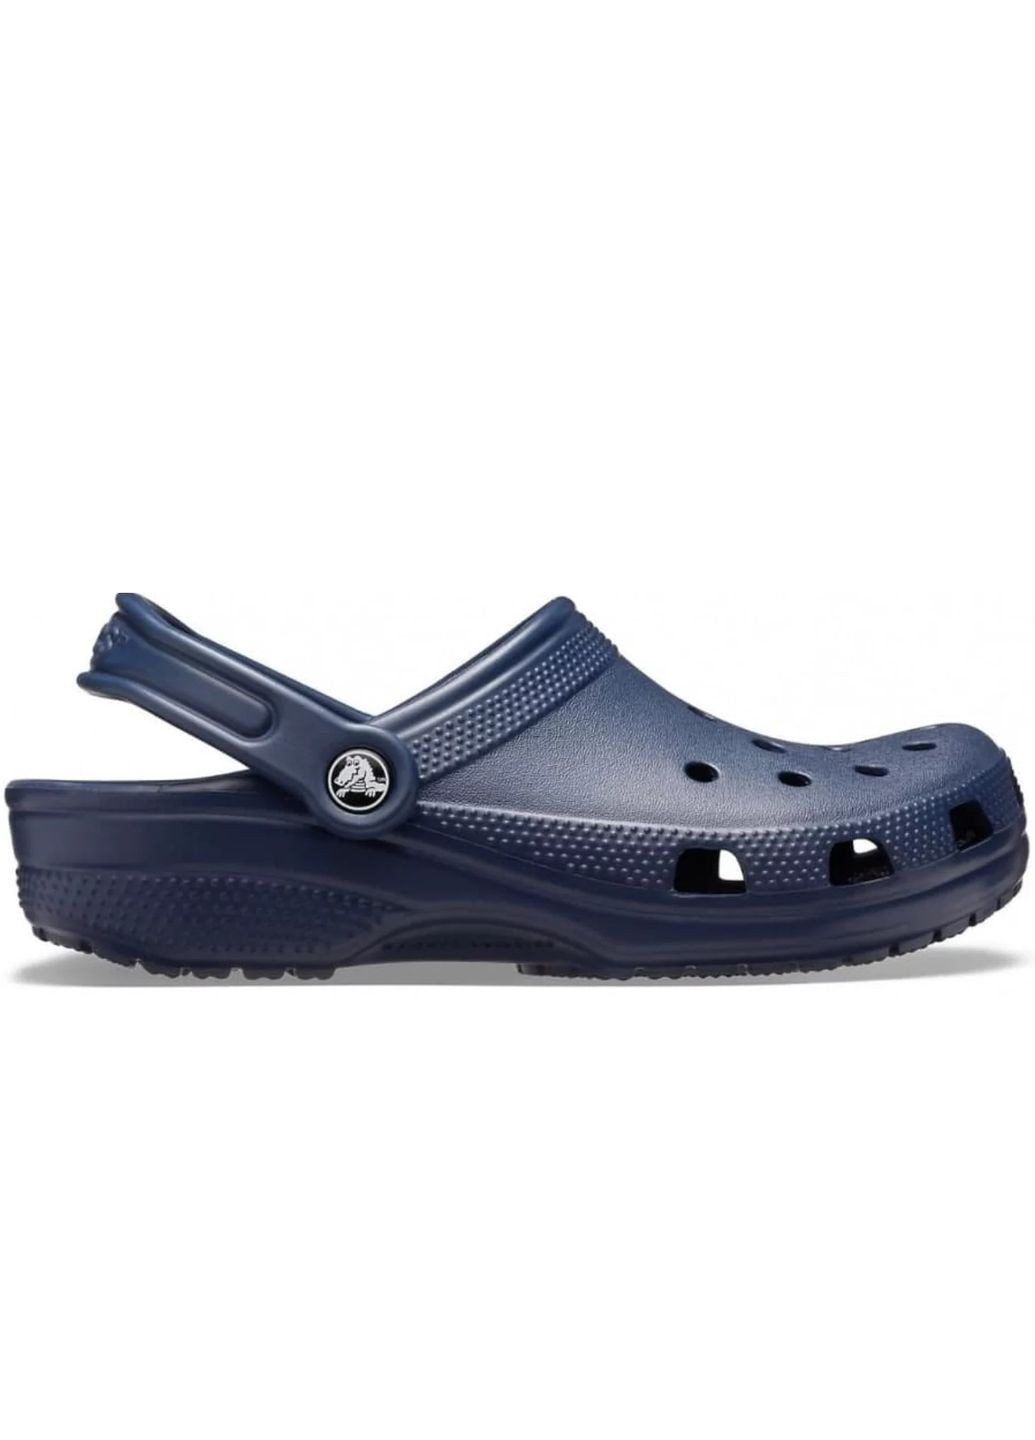 Синие сабо classic clog navy m4w6-36-23 см 10001-w Crocs